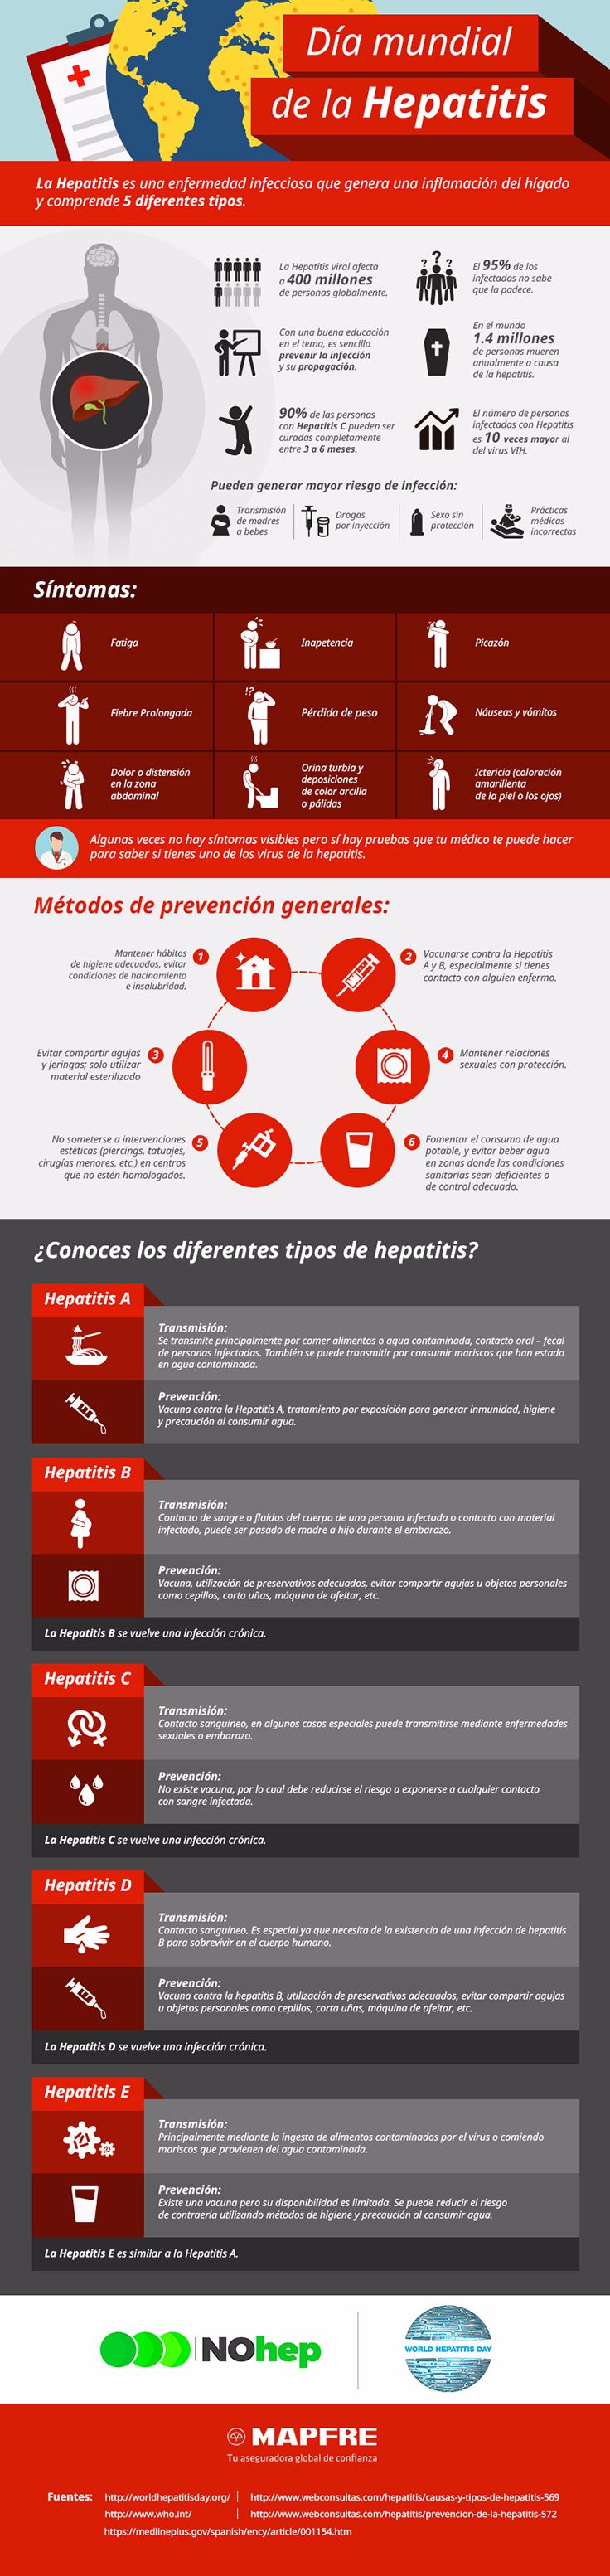 hepatitis: tipos, síntomas y prevención